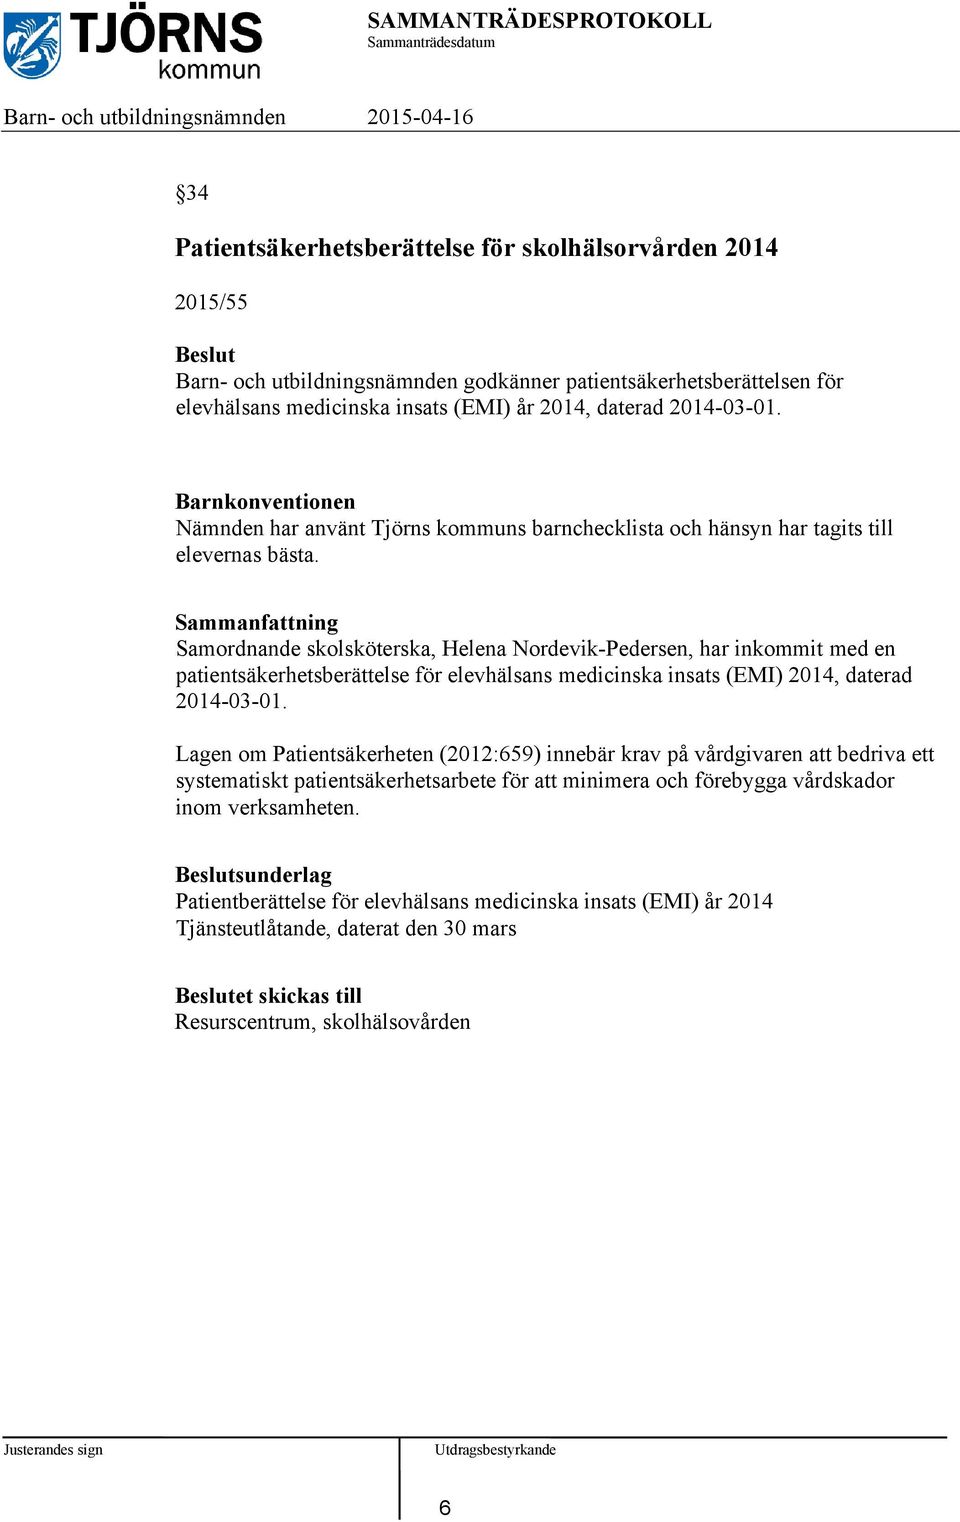 Samordnande skolsköterska, Helena Nordevik-Pedersen, har inkommit med en patientsäkerhetsberättelse för elevhälsans medicinska insats (EMI) 2014, daterad 2014-03-01.